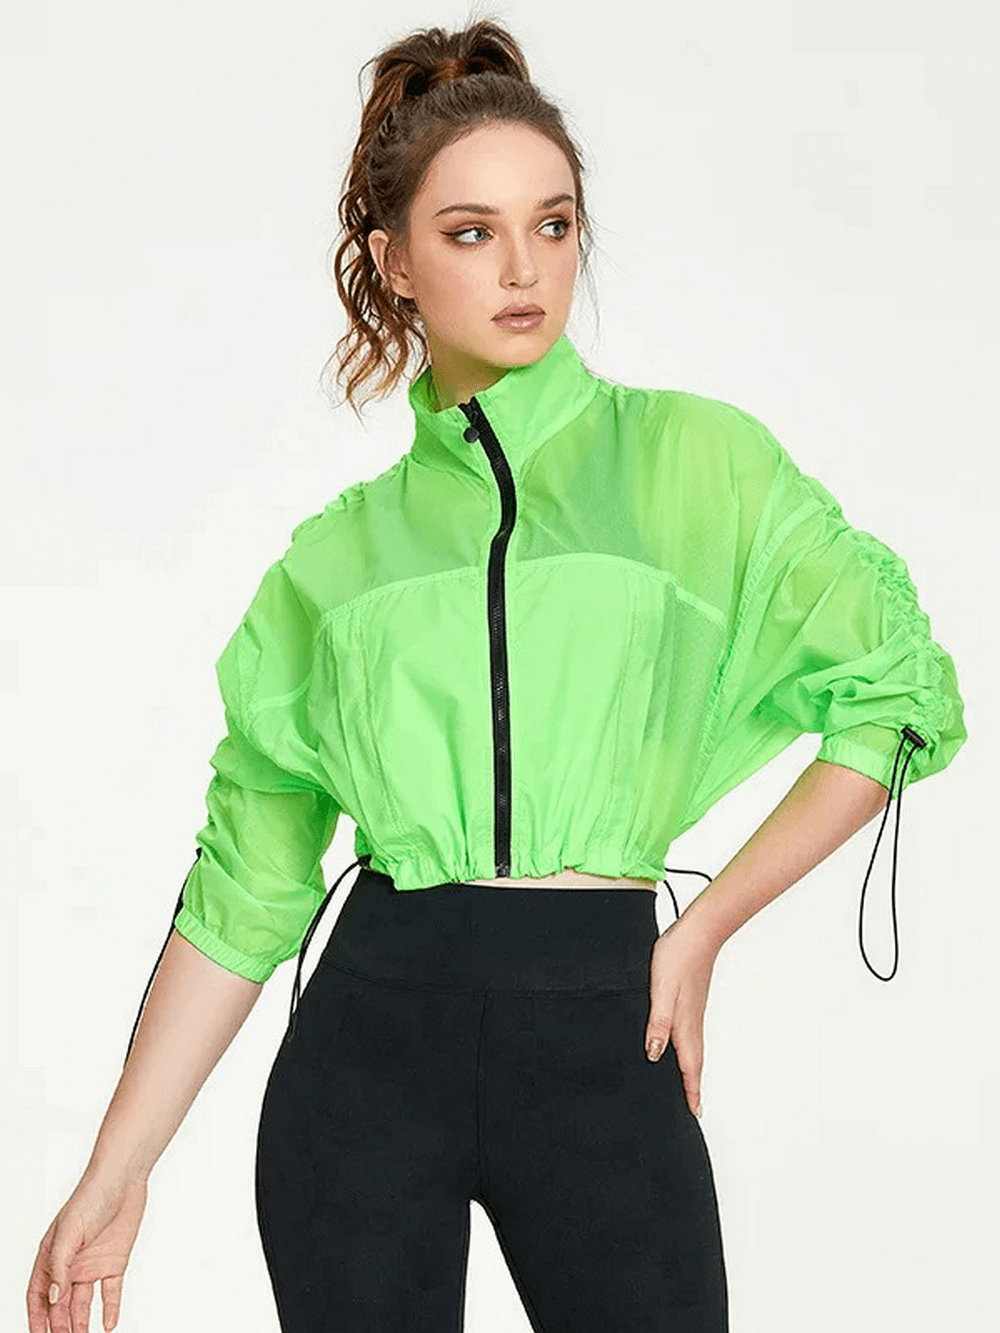 Women's Neon Windbreaker Jacket with Full Sleeves - SF2118